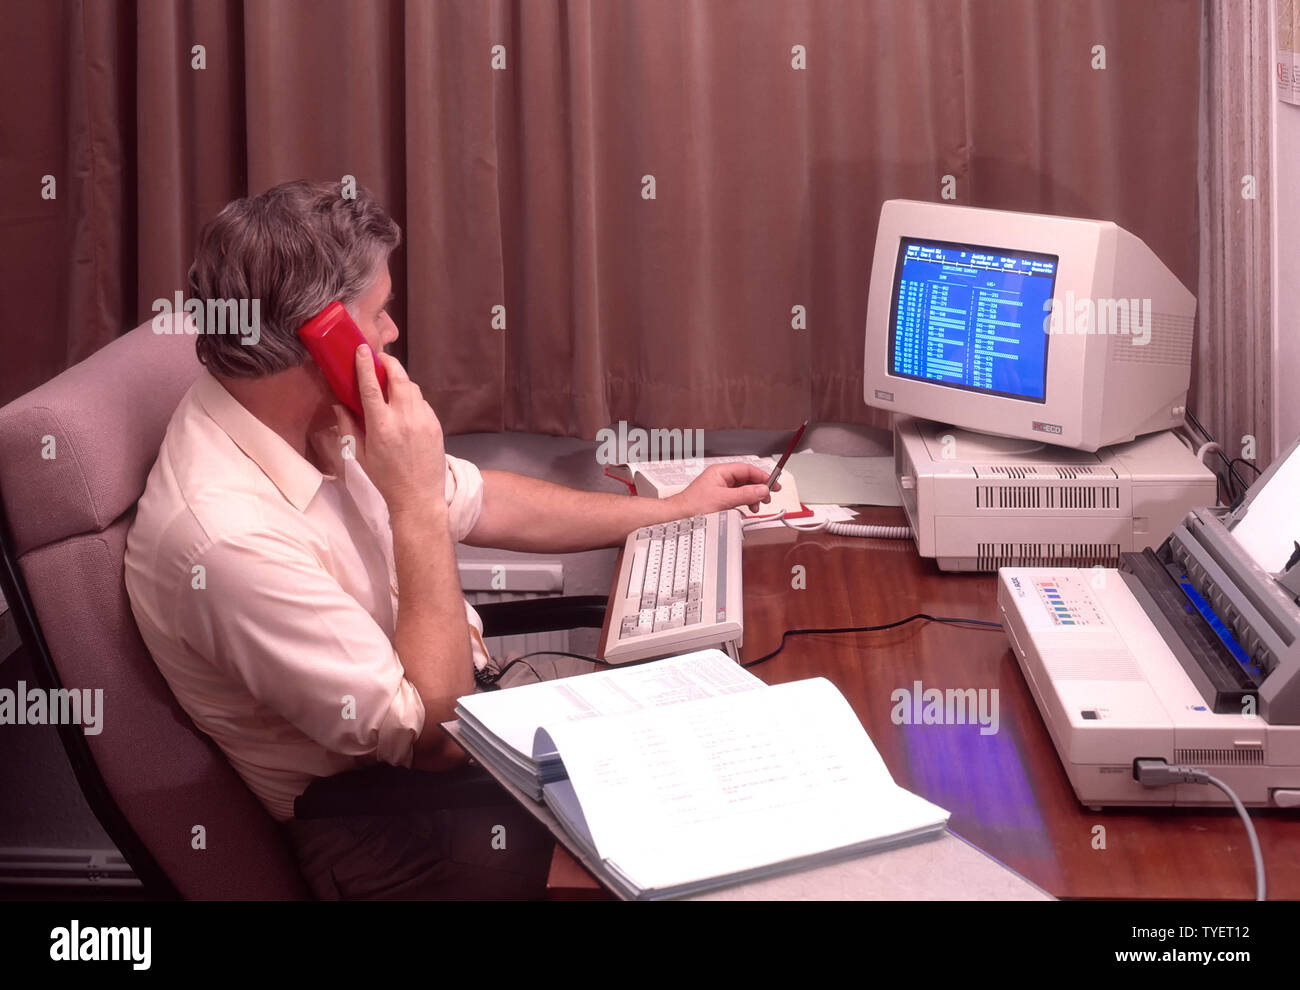 Imagen histórica de archivo de 1988 trabajador de oficina masculino autónomo hombre sentado en el escritorio trabajando tarde desde las cortinas de casa dibujado cerrado usando el teléfono fijo rojo Amstrad ordenador de escritorio pantalla azul e impresora archivo de 1980 de la manera que éramos WFH en Inglaterra Reino Unido en la década de 80 Foto de stock